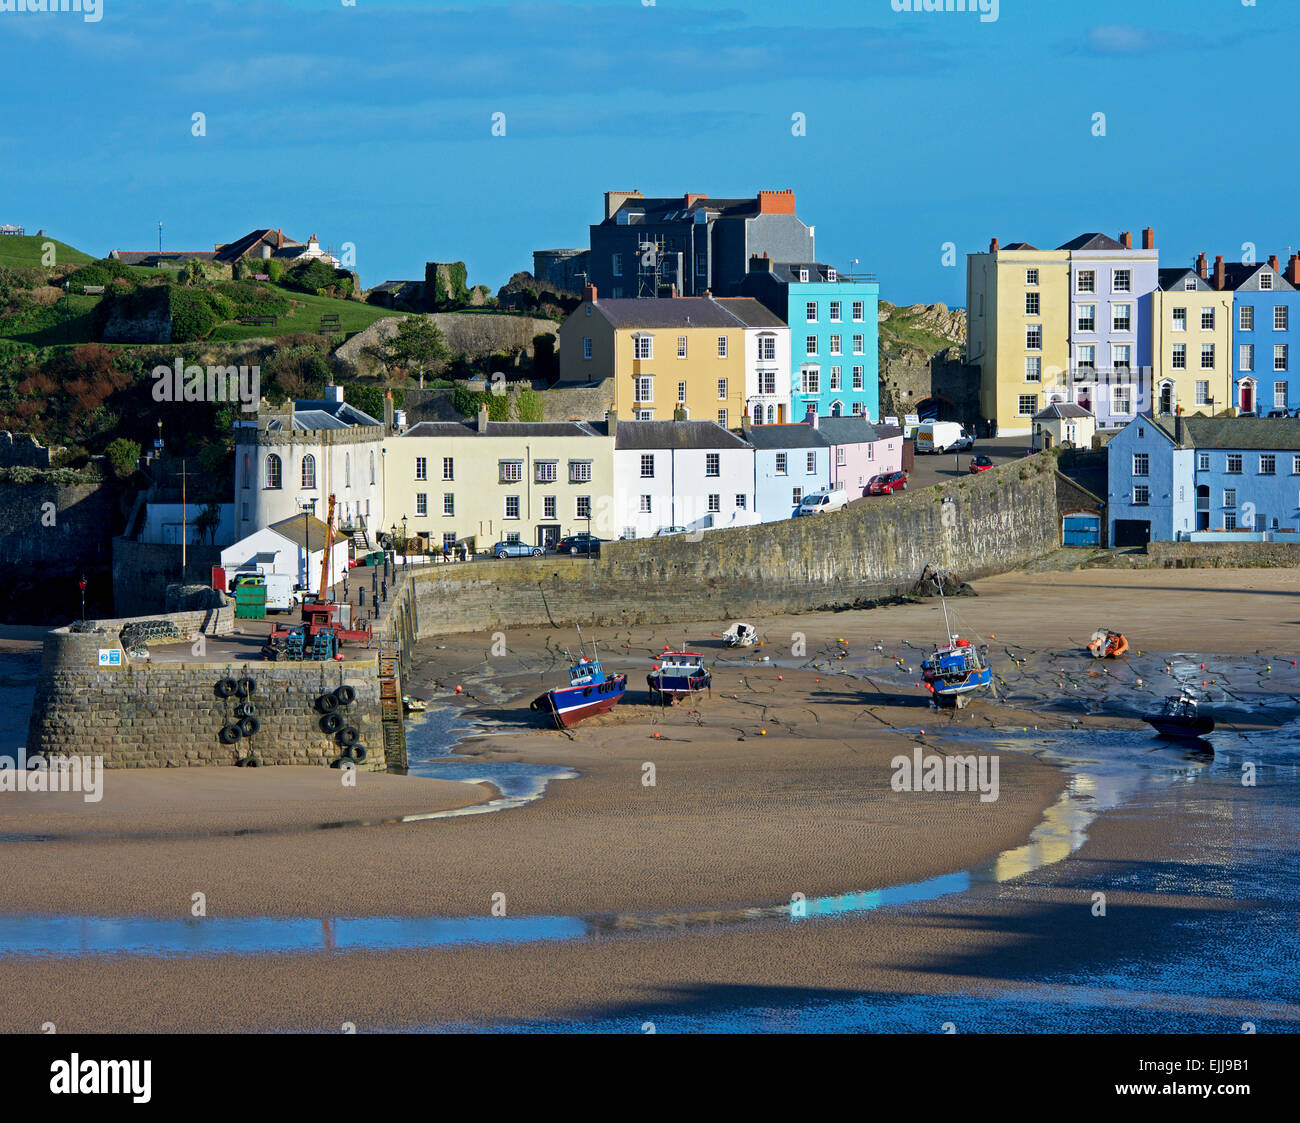 La spiaggia e il porto, con la bassa marea, Tenby, Pembrokeshire, Wales UK Foto Stock